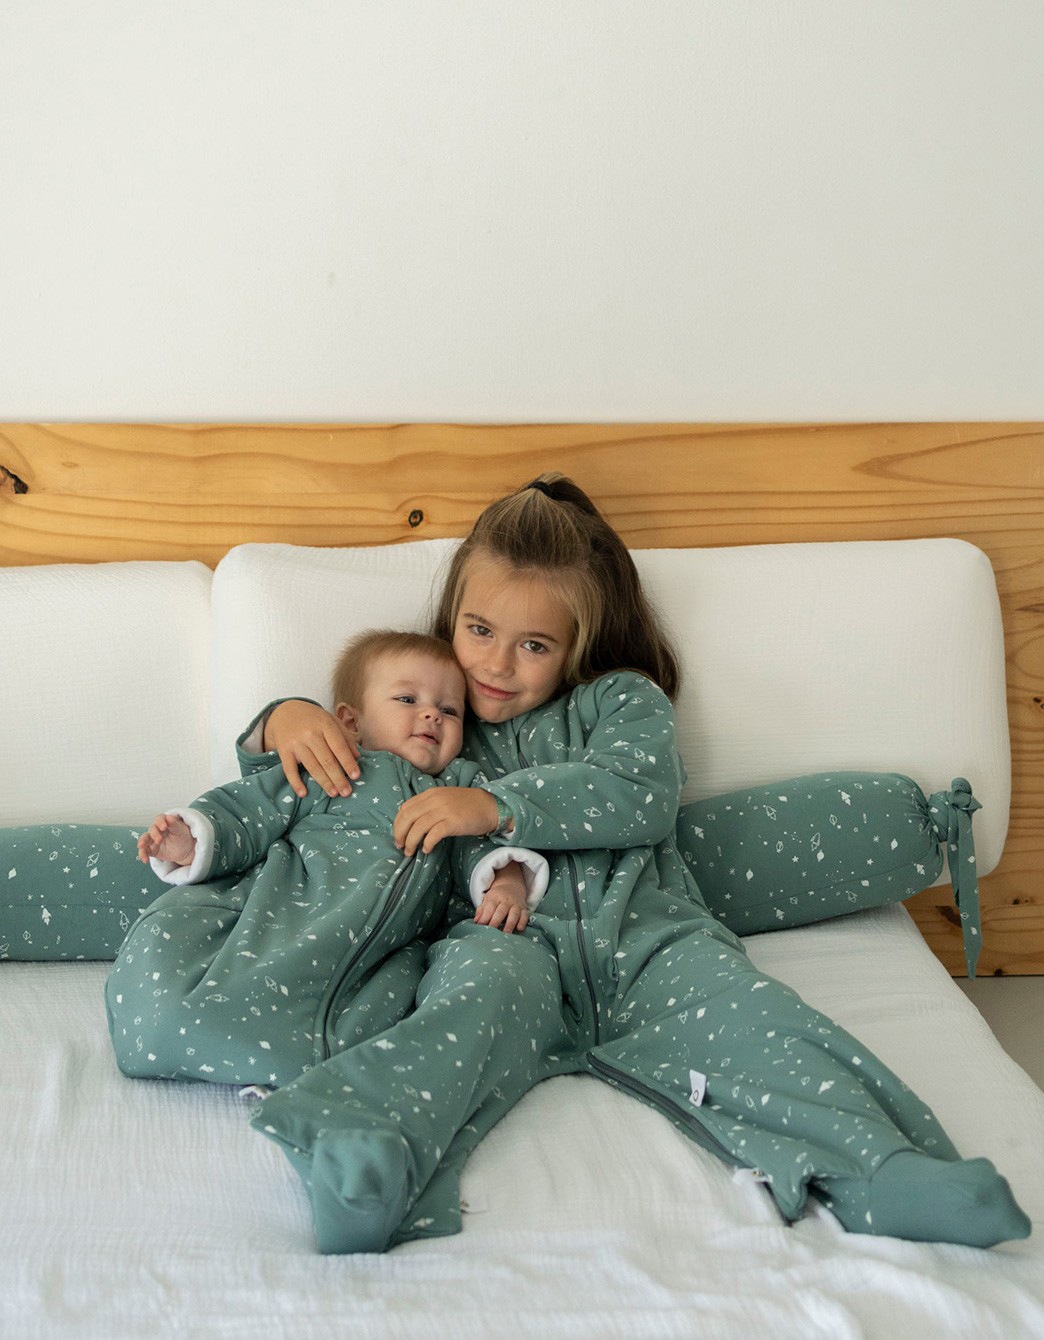 Sacos de Dormir y Pijamas Manta: ¡dile adiós al frío!